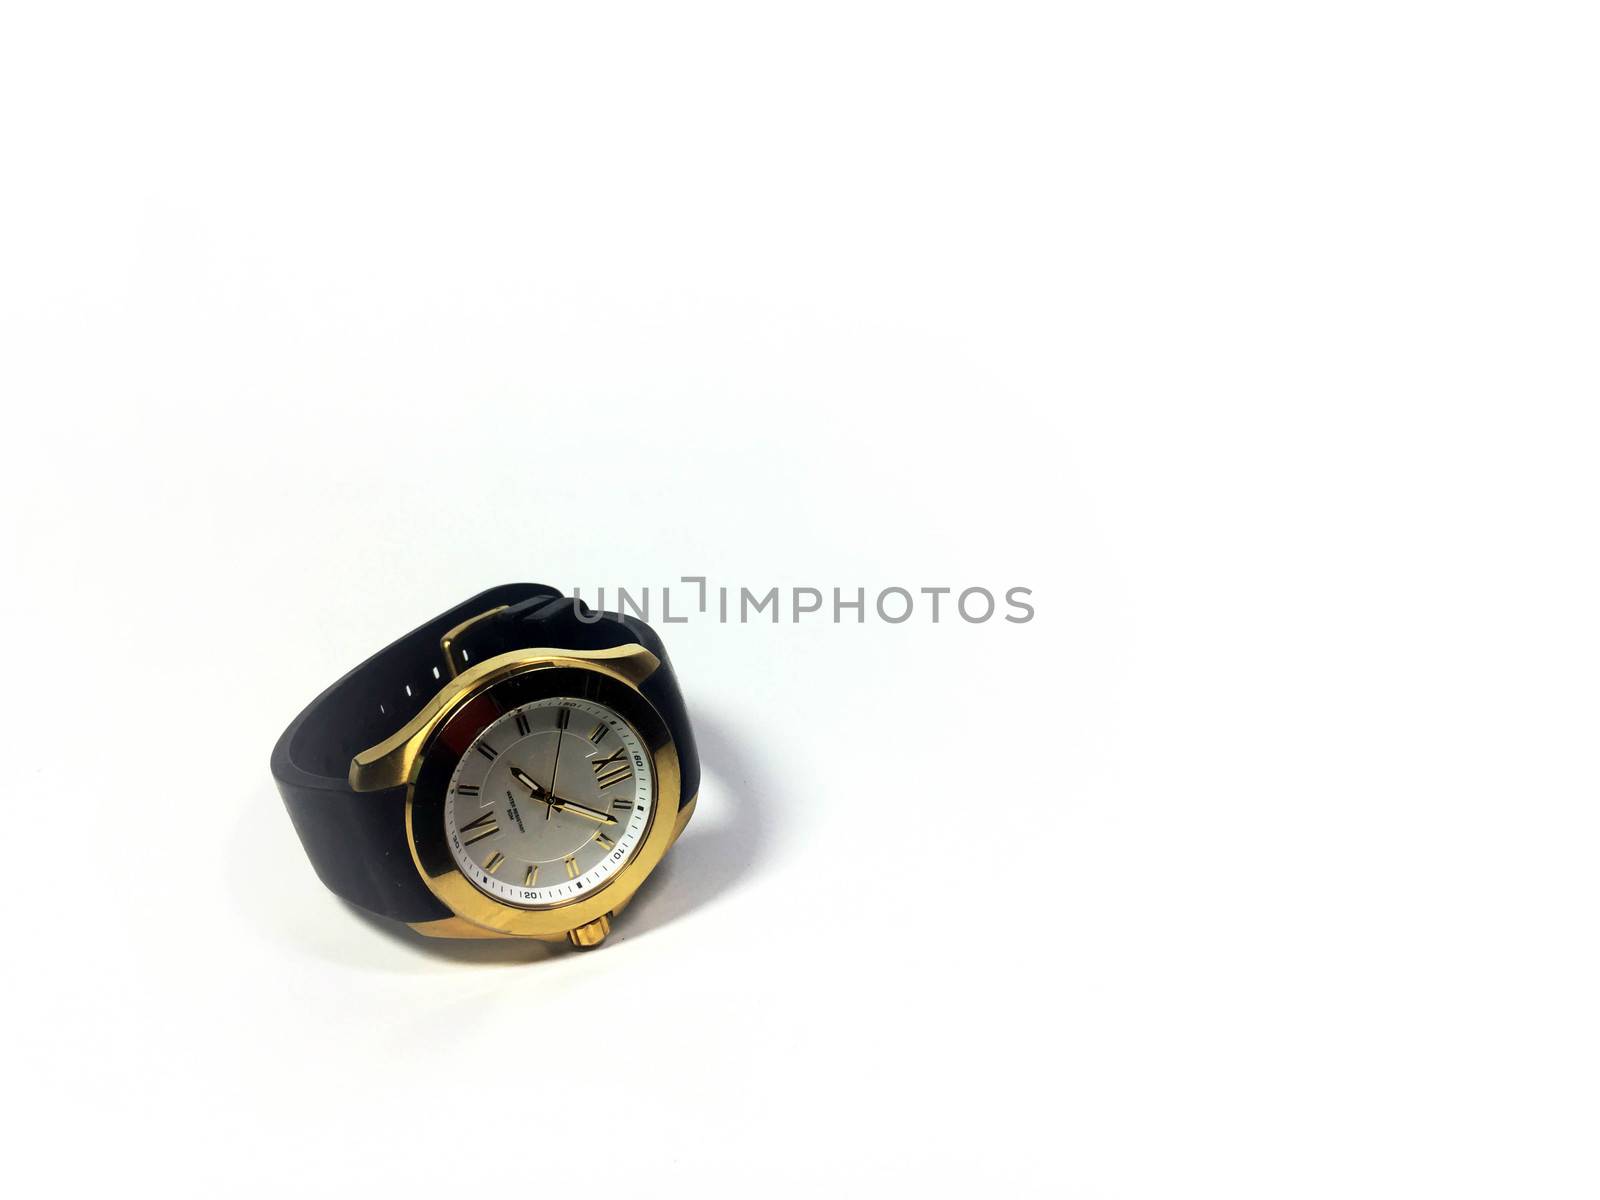 the gold watch by e22xua